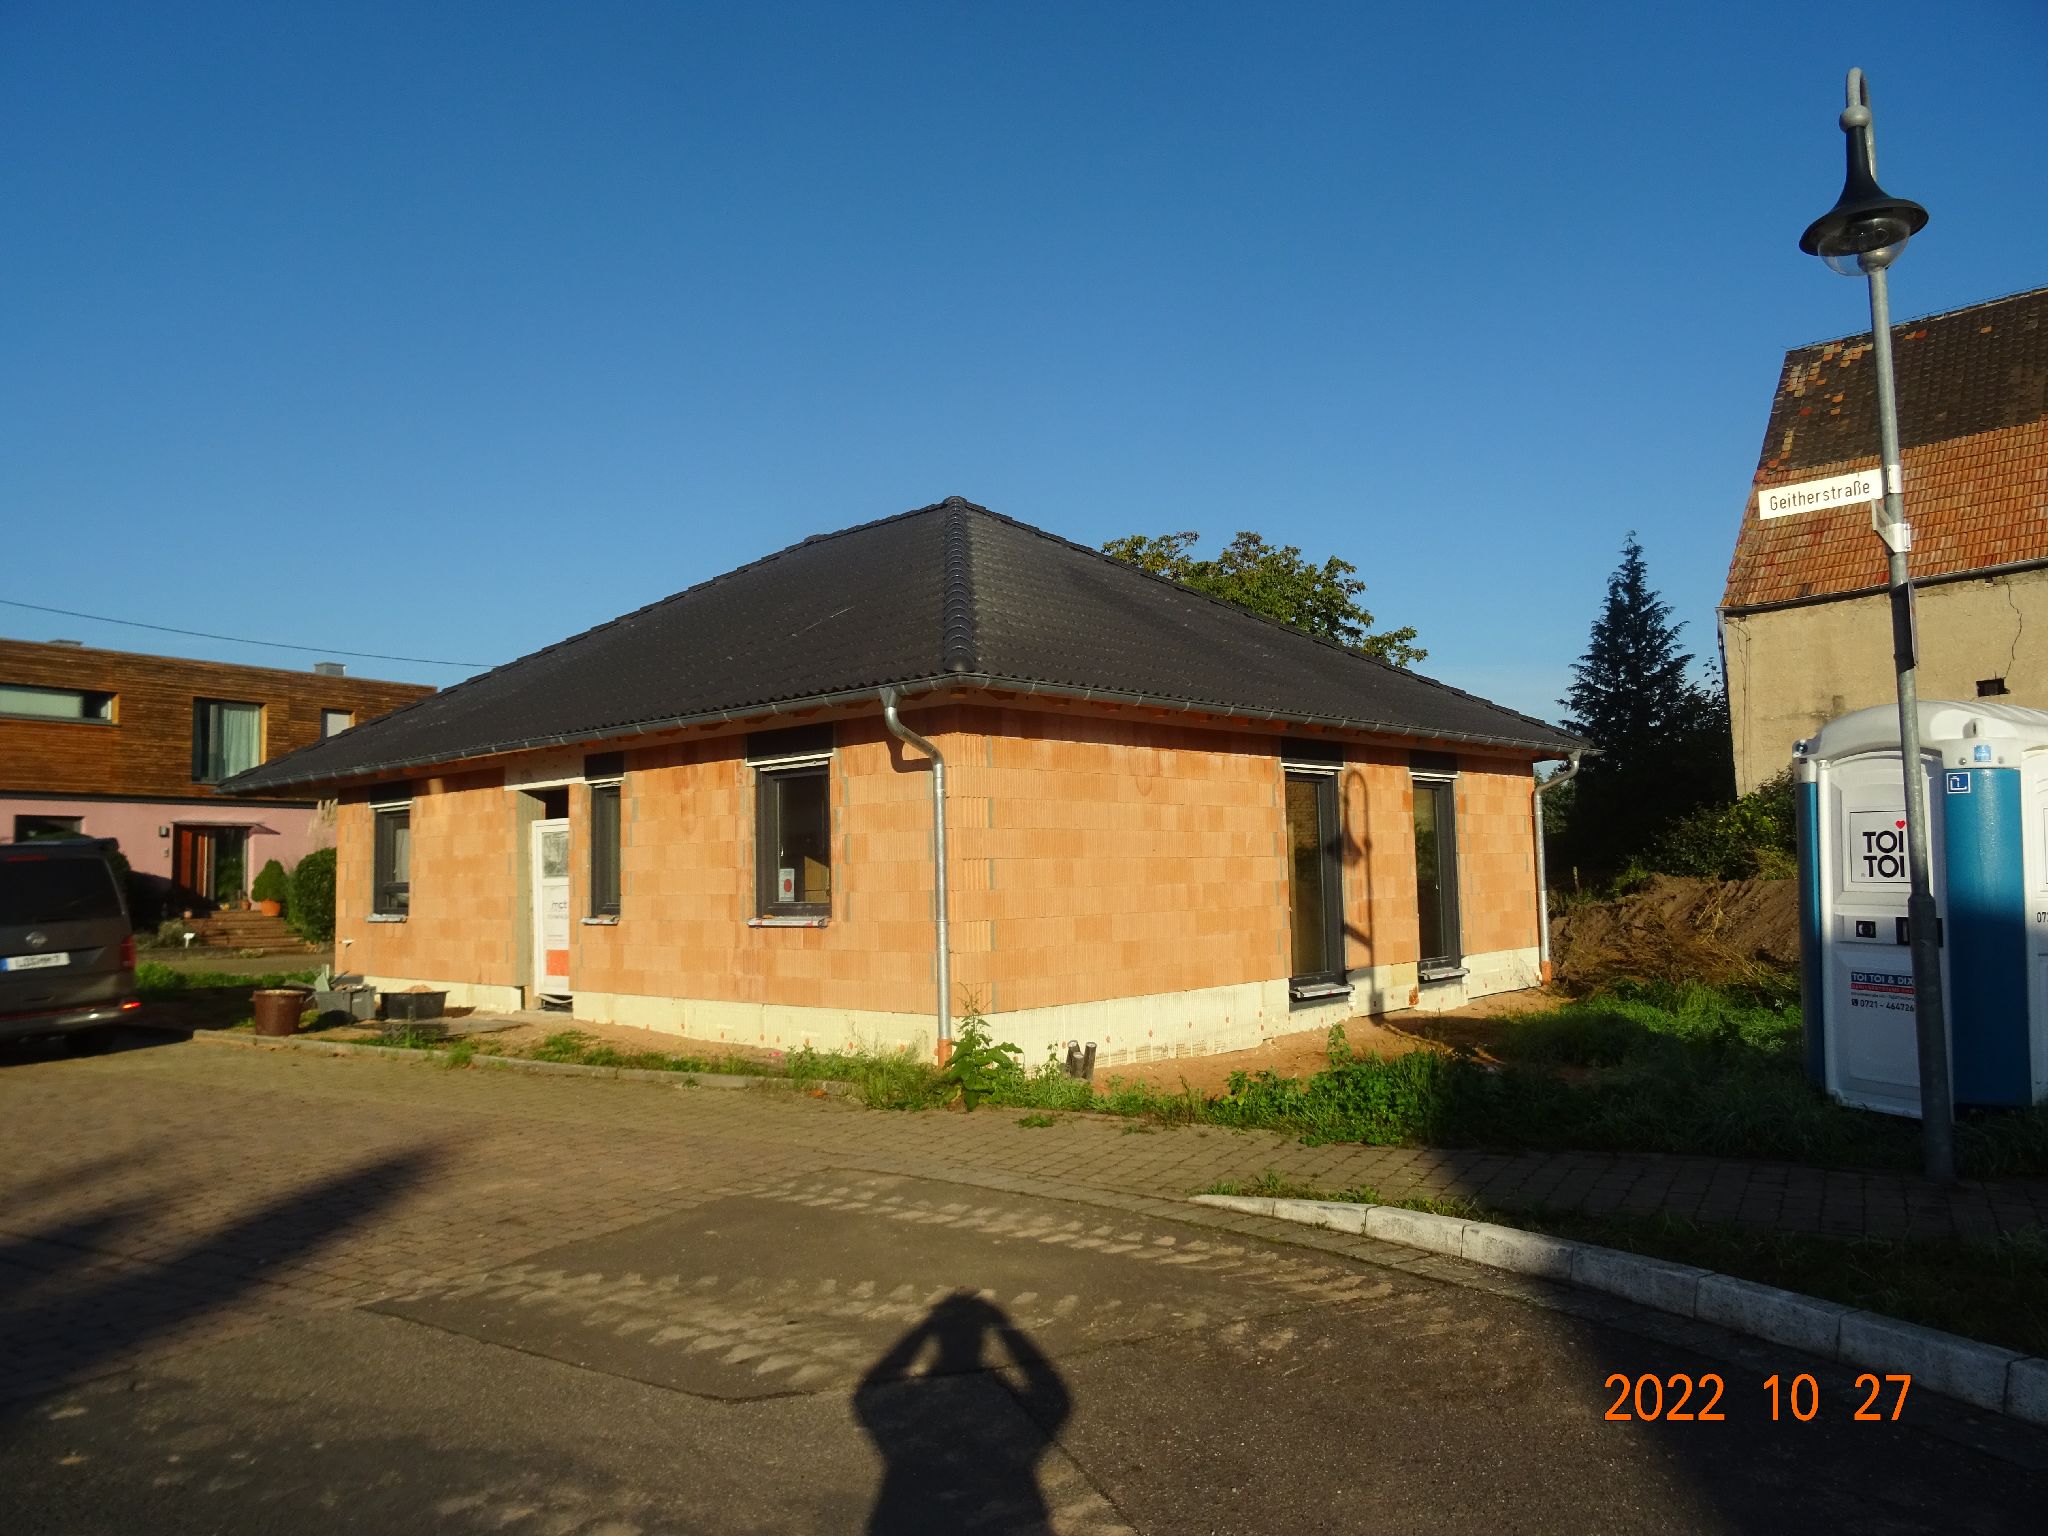 Einfamilienhaus in Neustadt-Geinsheim